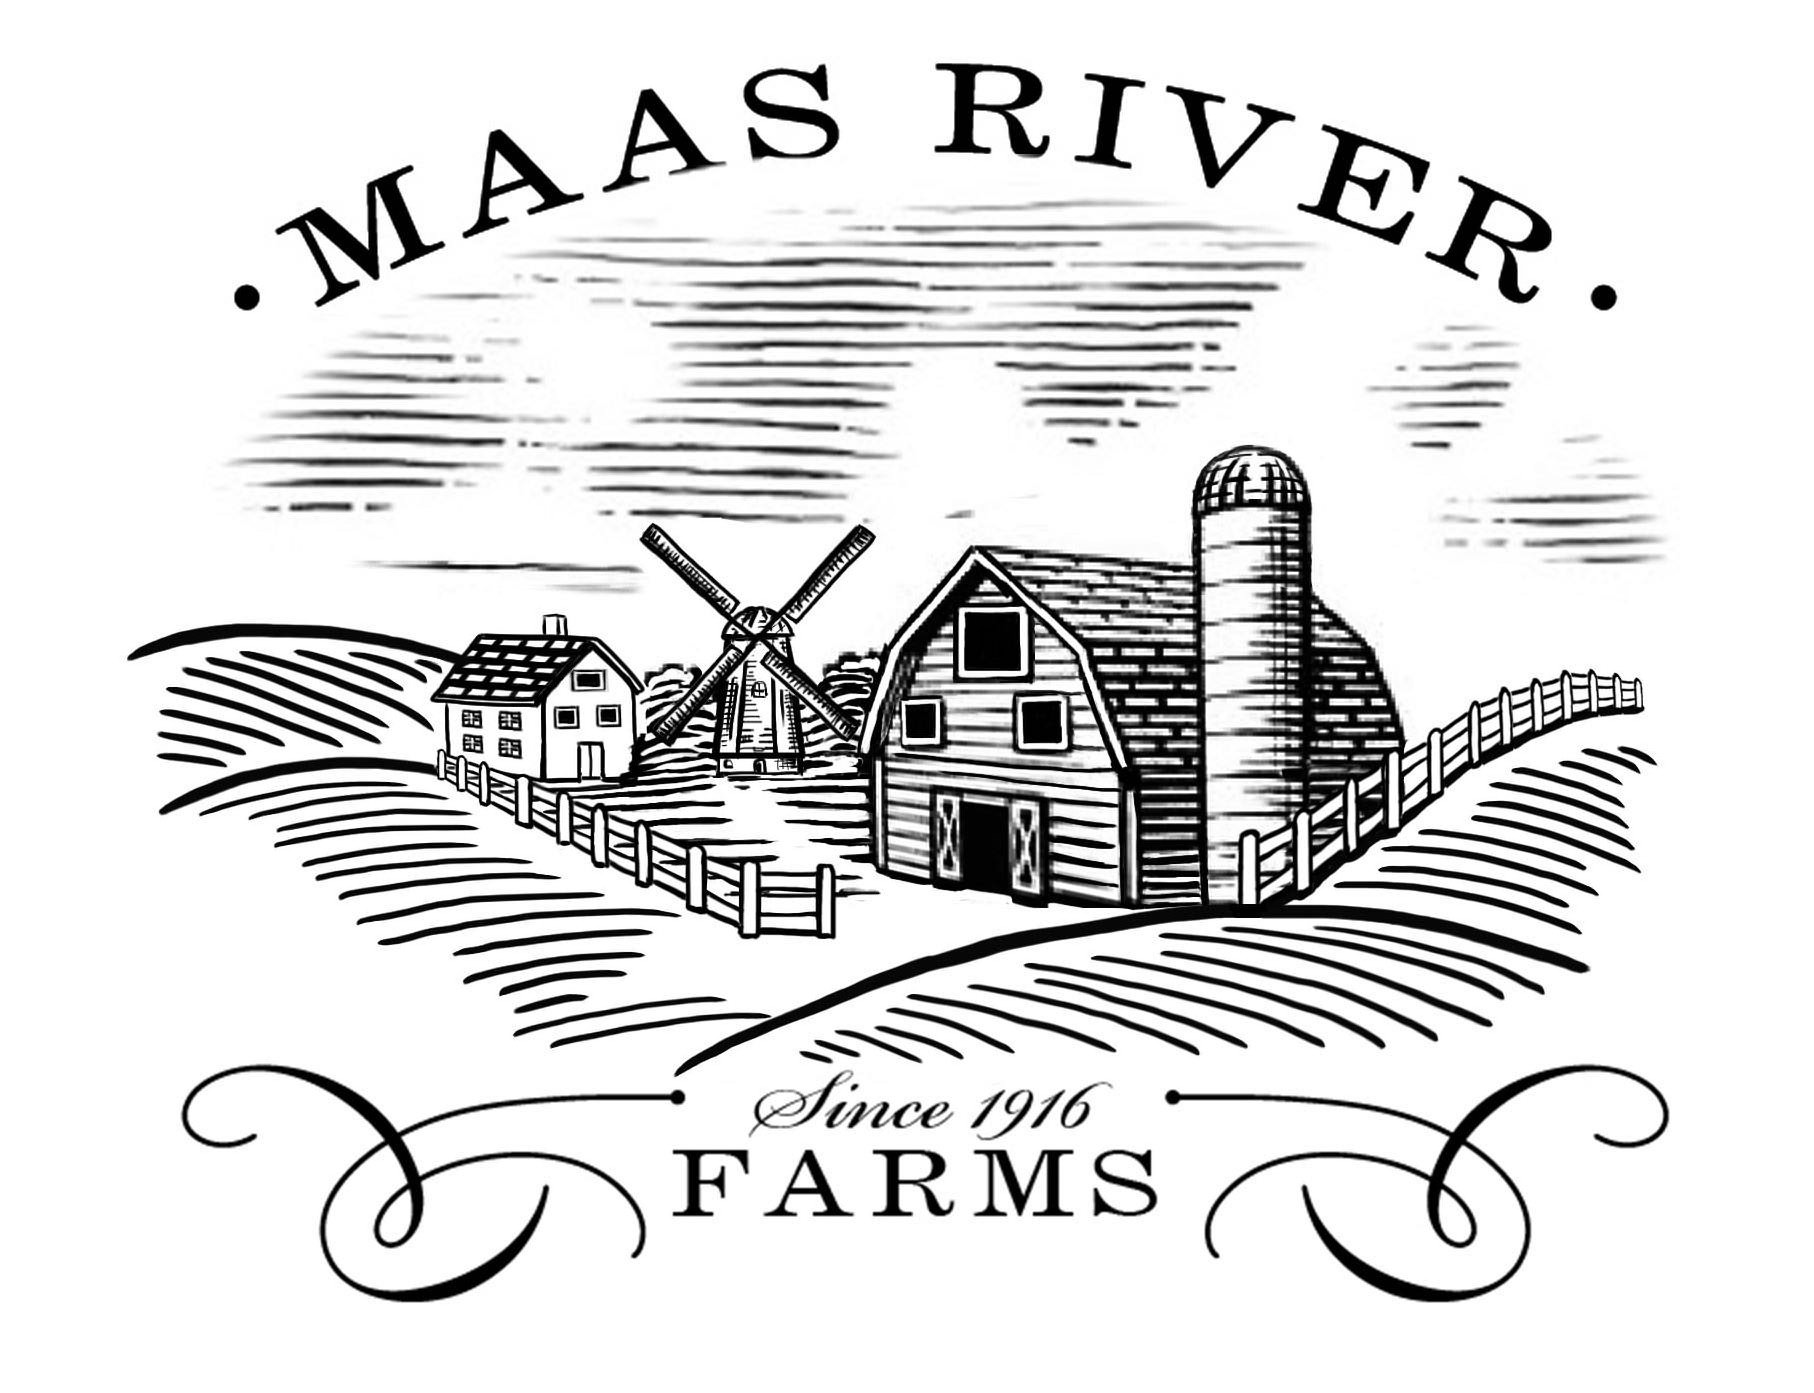  · MAAS RIVER Â· FARMS SINCE 1916